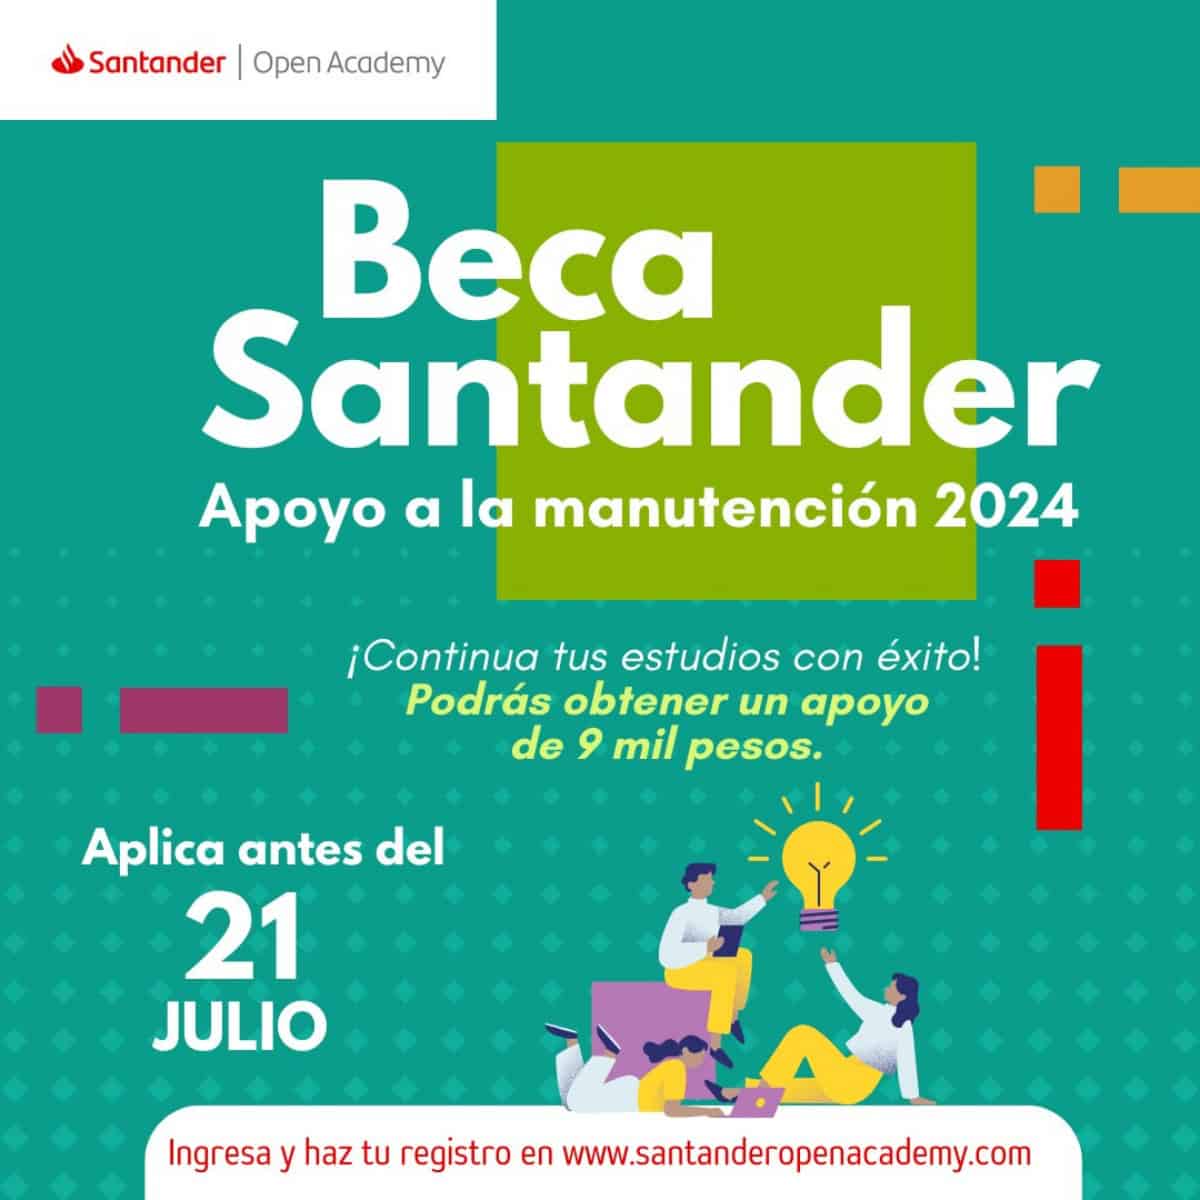 Beca Santander: requisitos y pasos para obtener 'Apoyo a la manutención 2024'